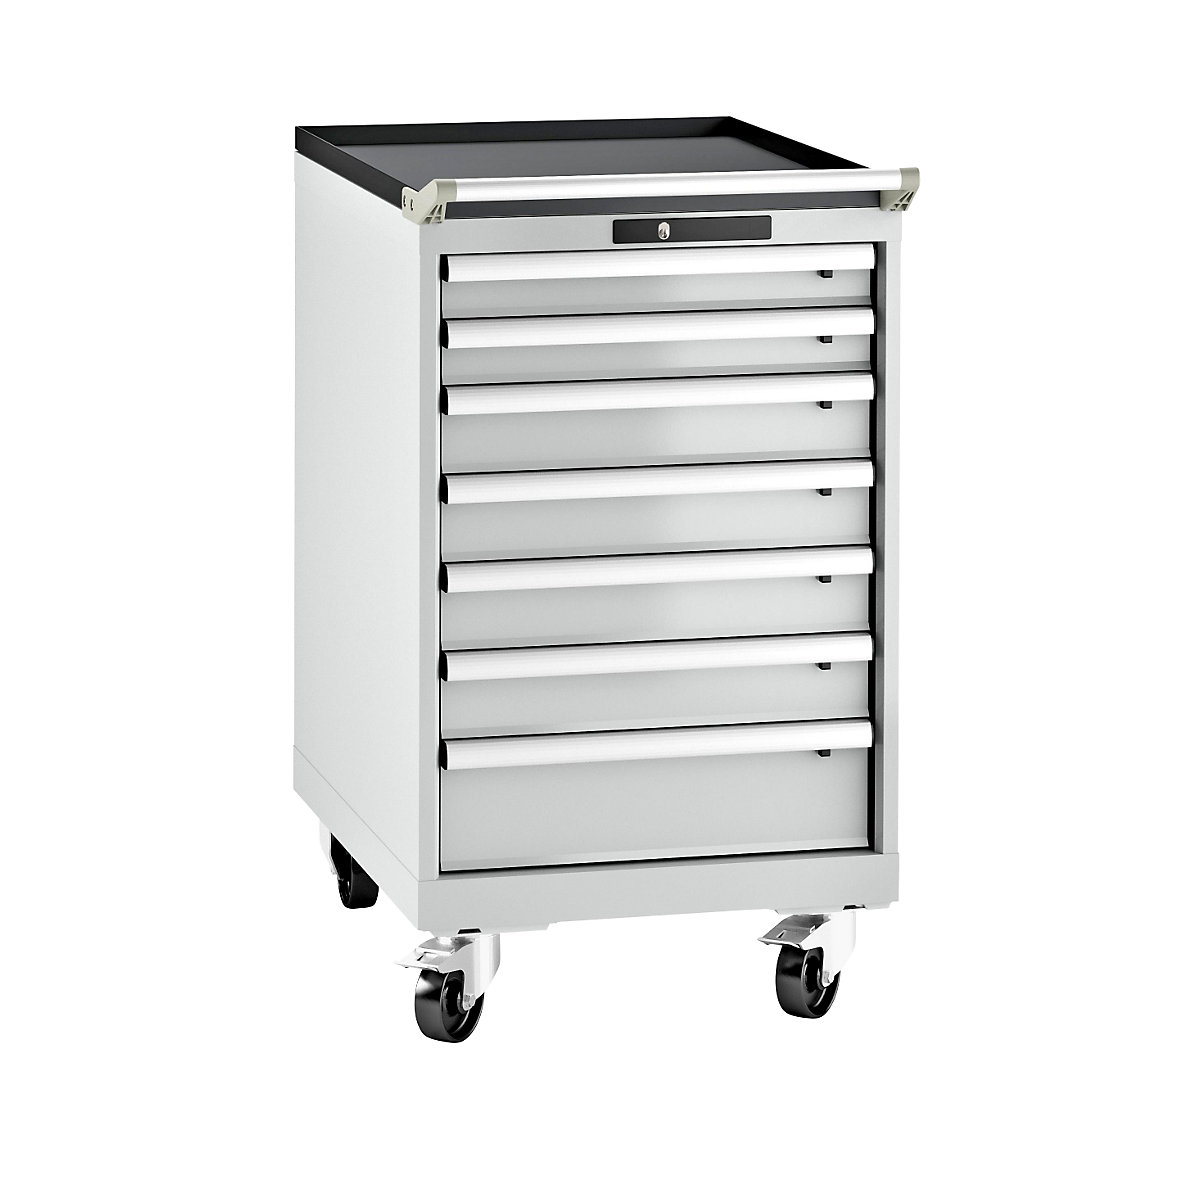 LISTA – Armoire à tiroirs en tôle d'acier, h x l 990 x 564 mm, 7 tiroirs, mobile, gris clair